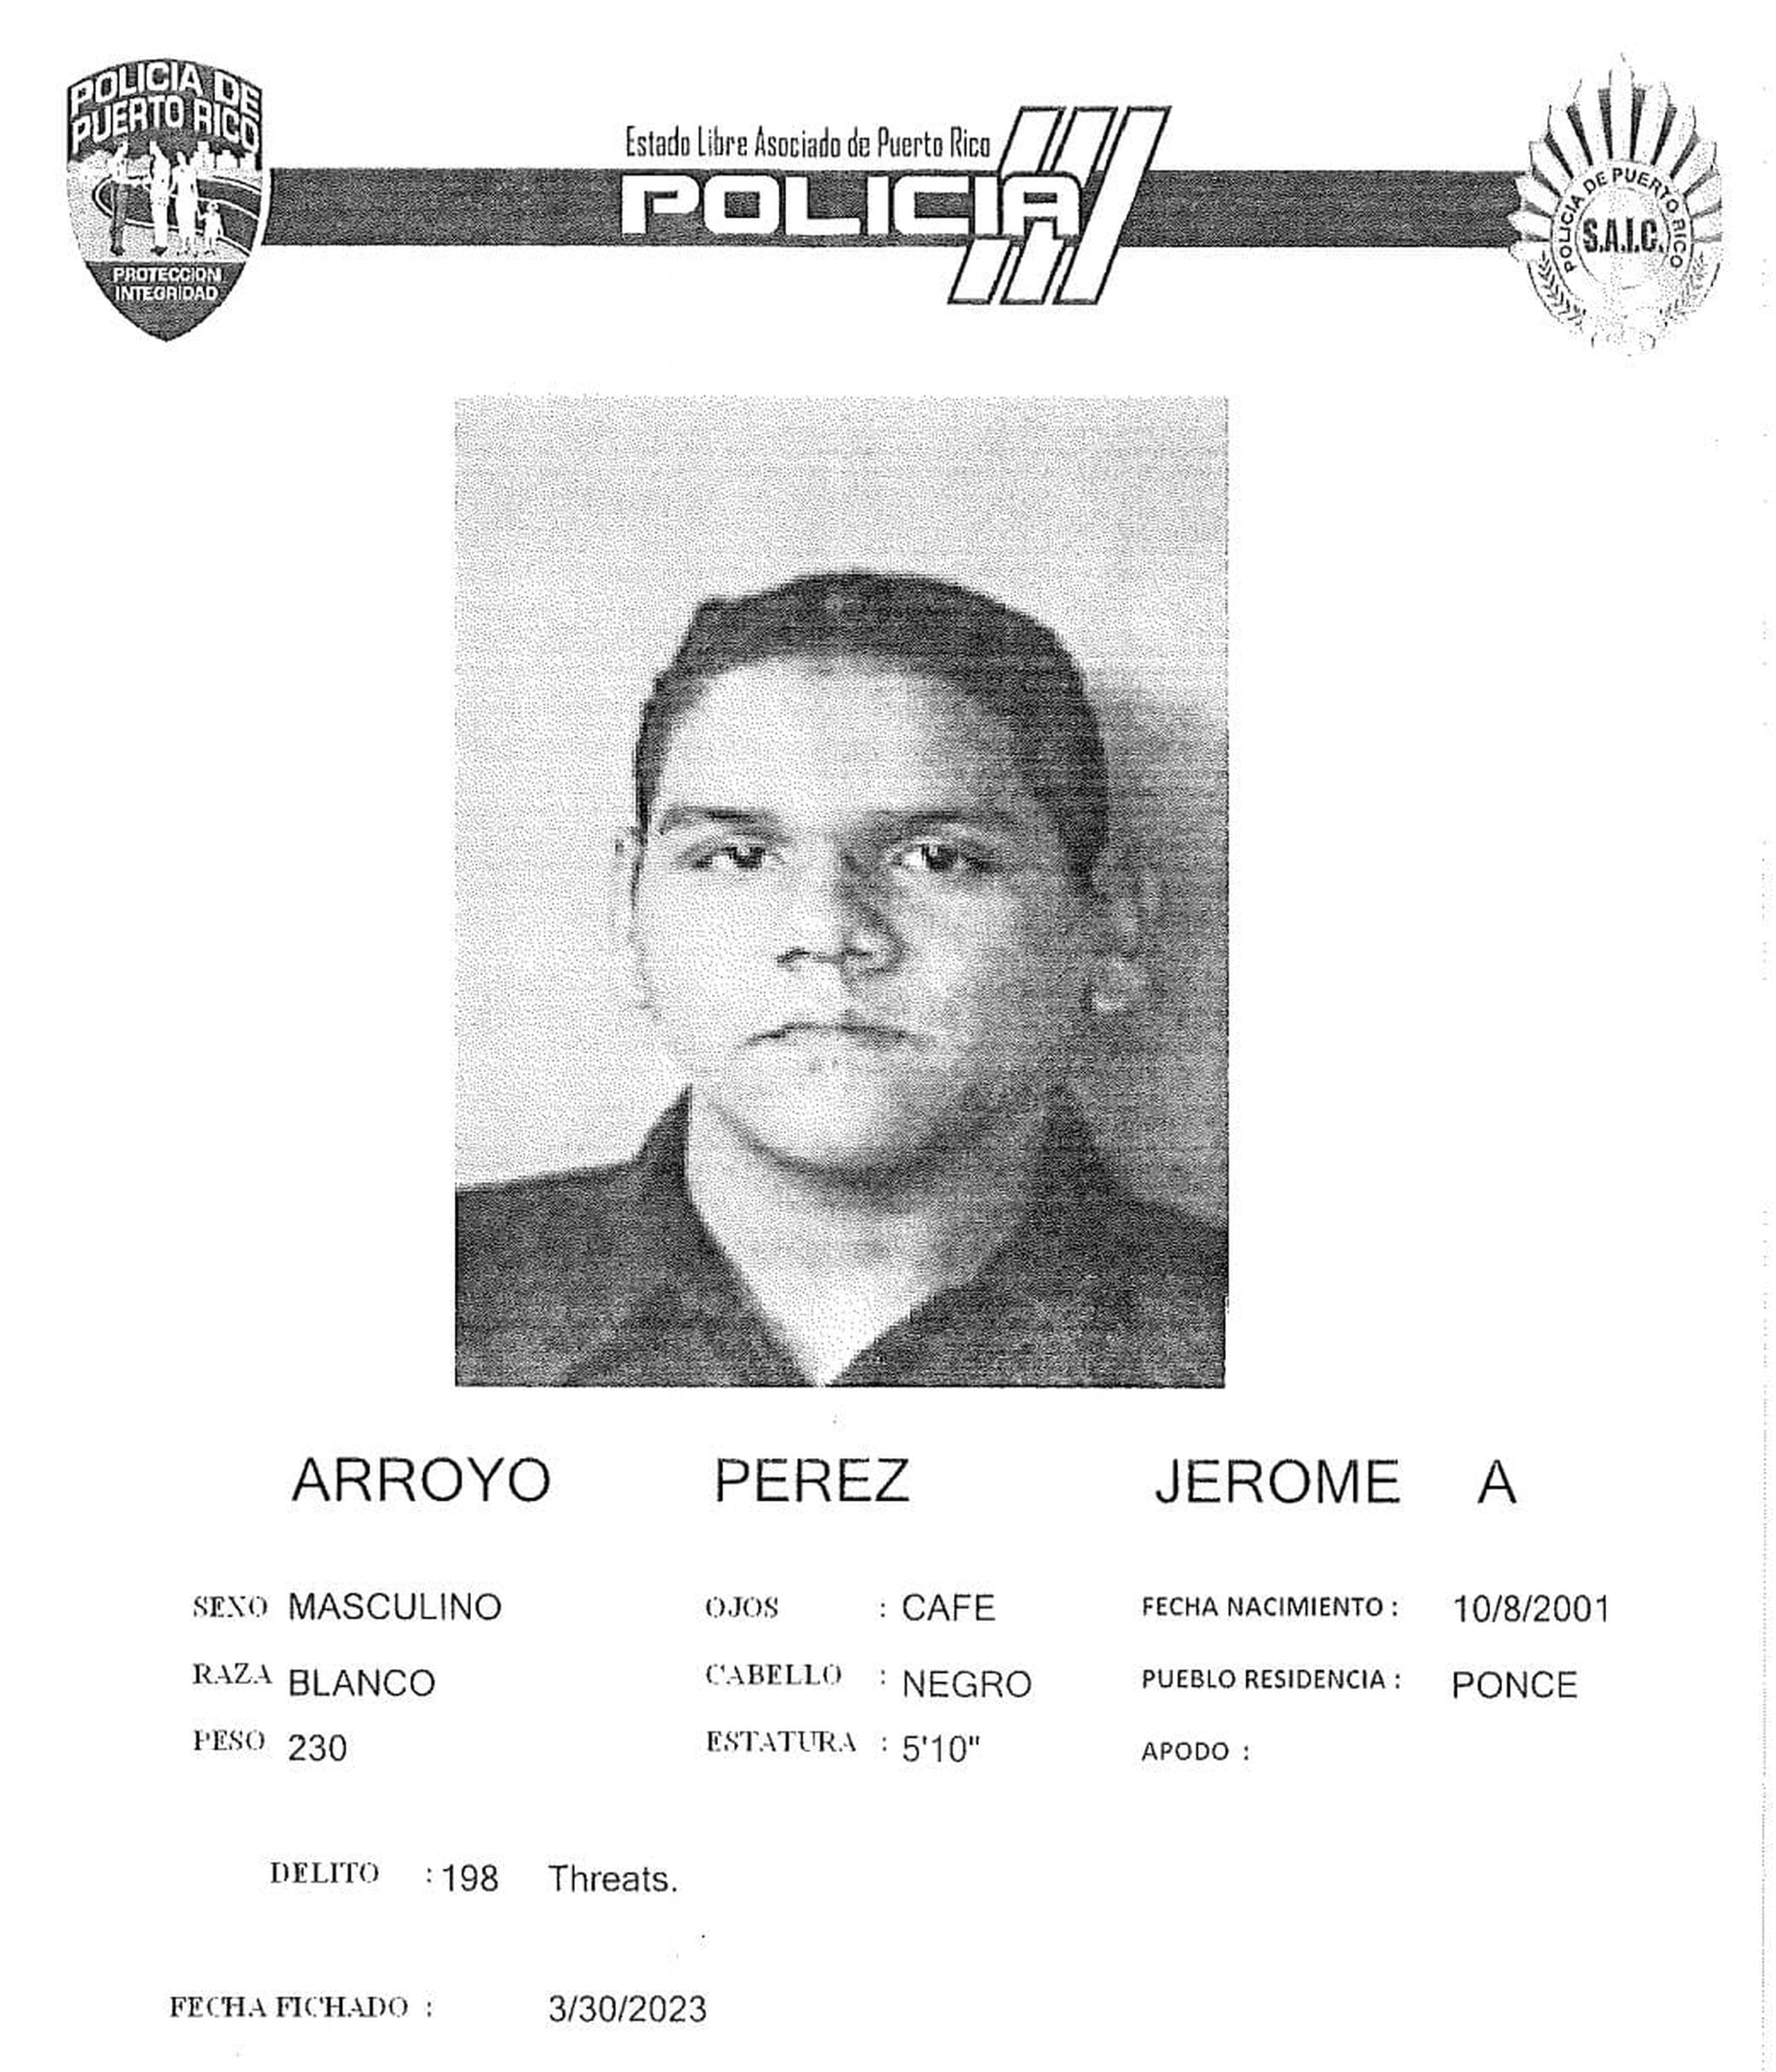 Jerome A. Arroyo Pérez enfrenta cargos por amenaza, impostura y posesión y traspaso de documentos falsificados.